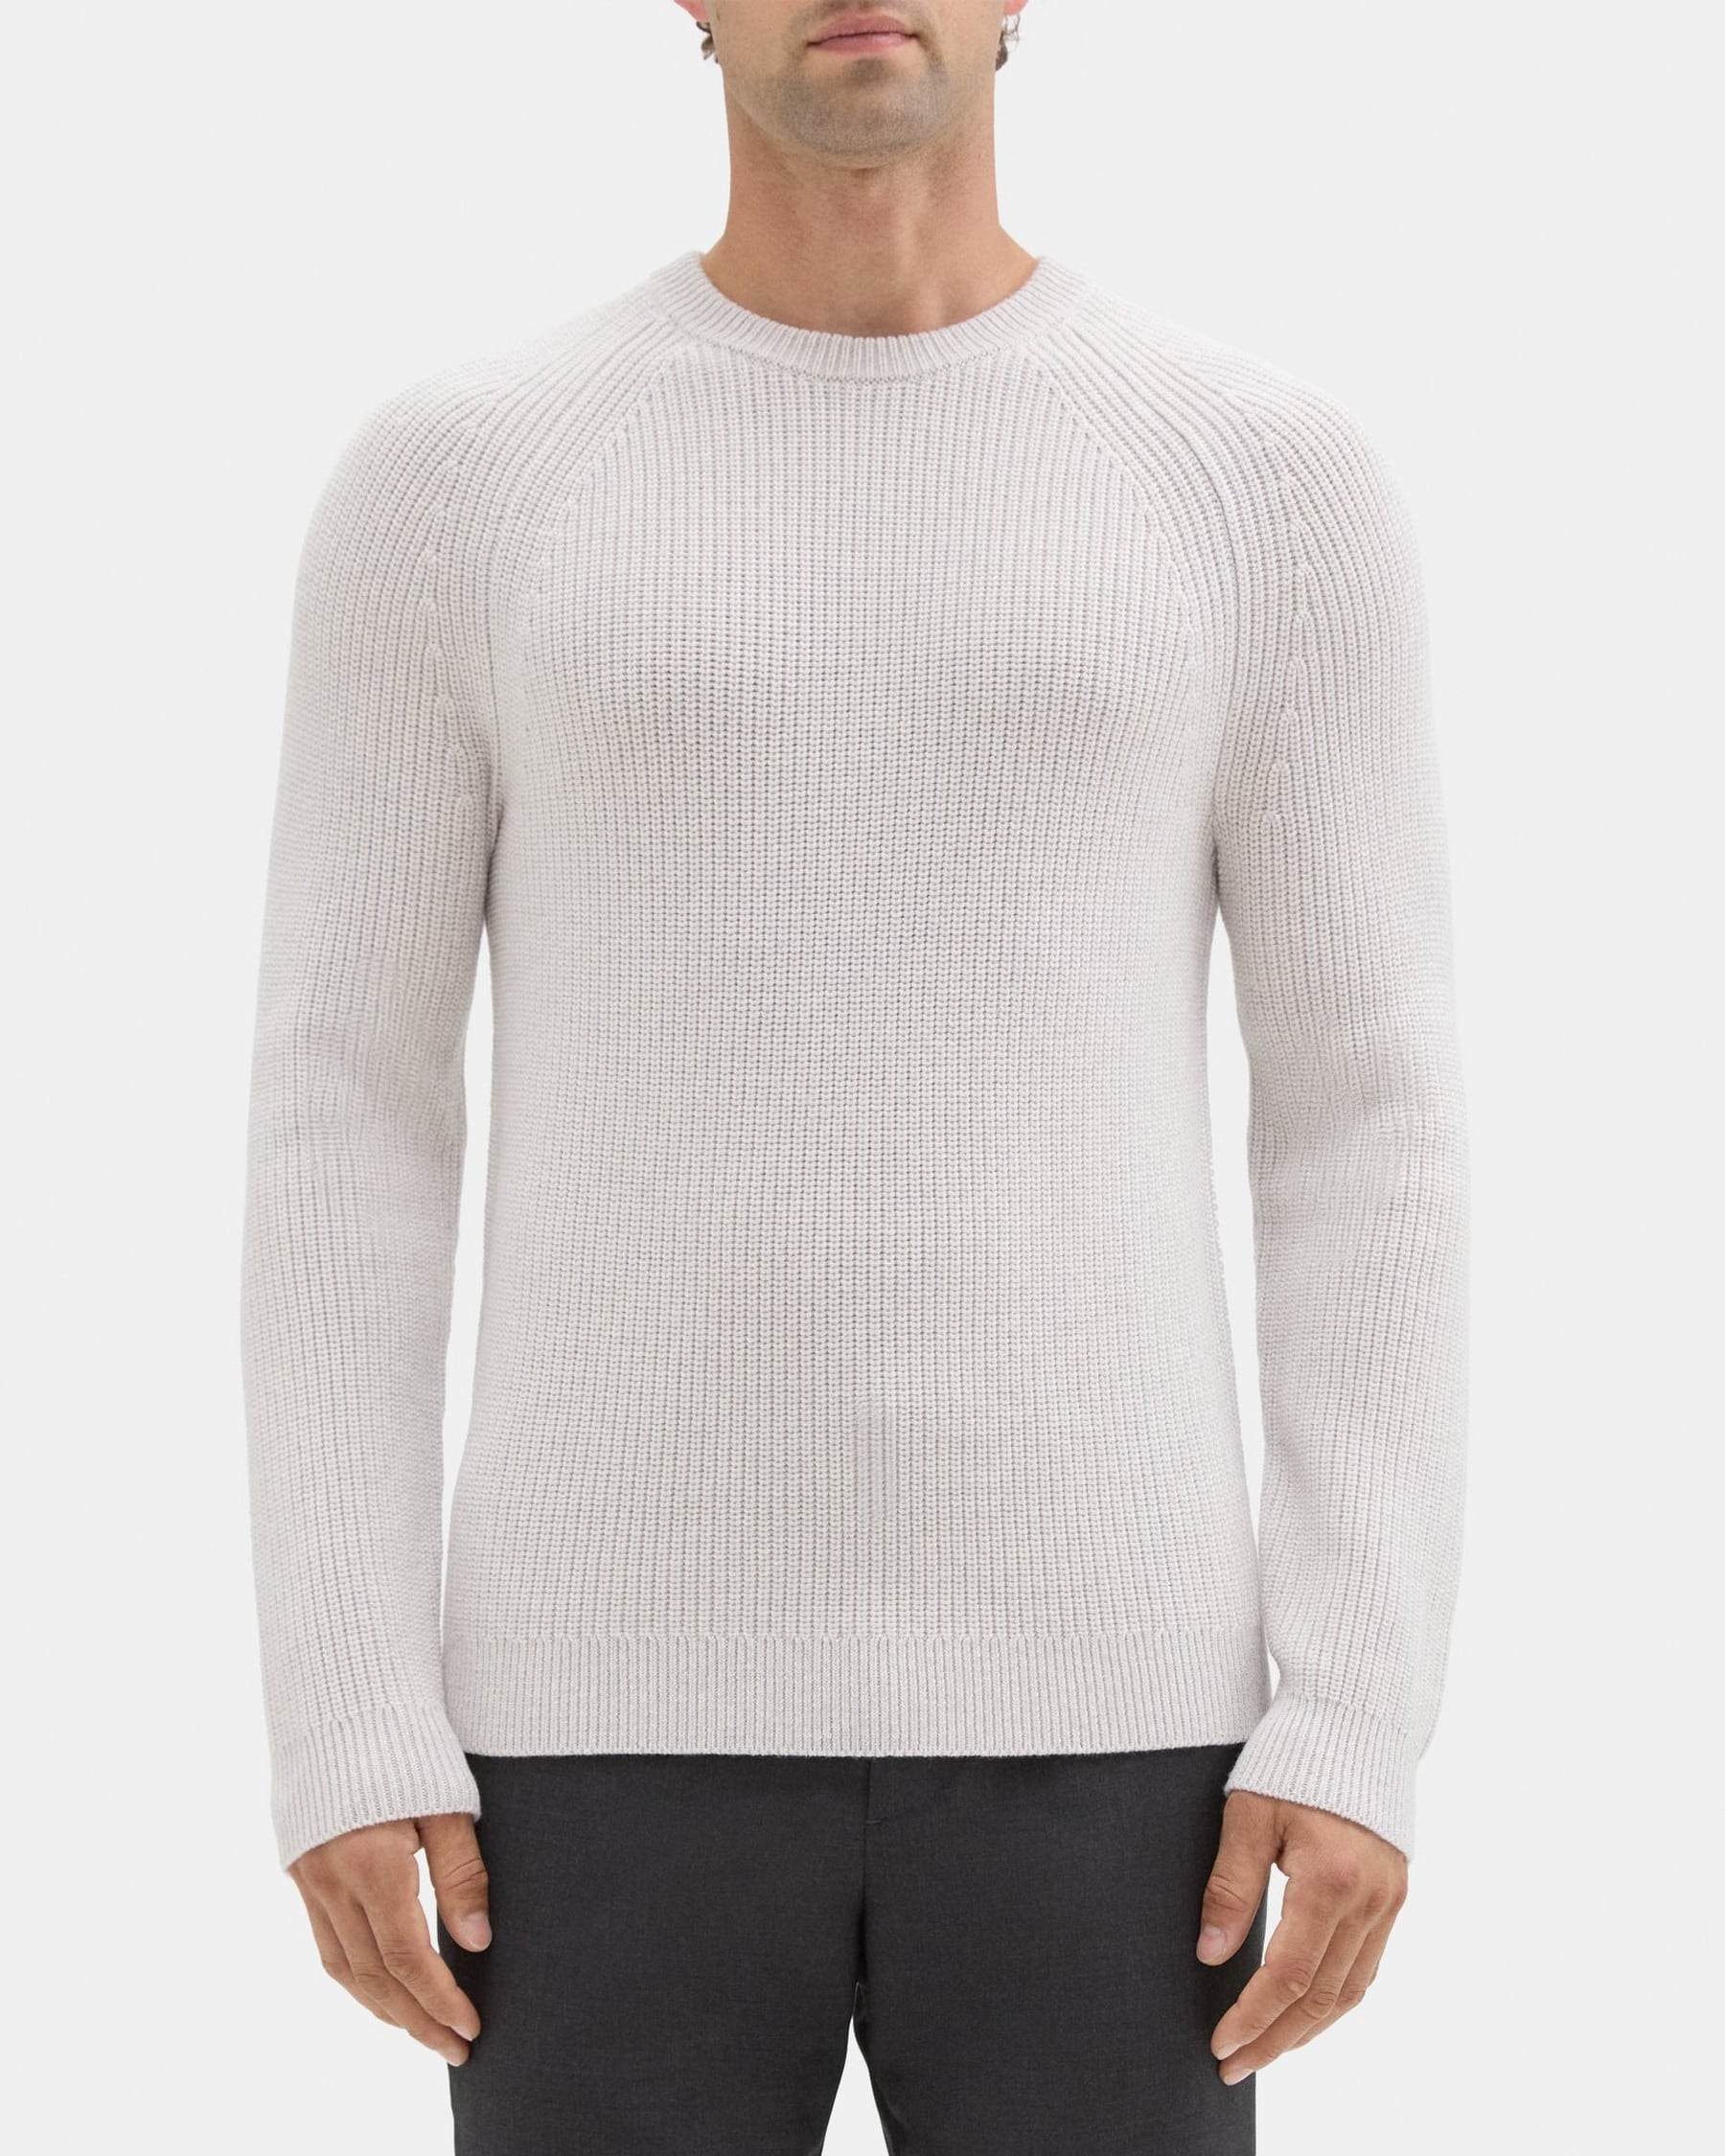 띠어리 Theory Crewneck Sweater in Merino Wool,P러쉬 LUSH/WHITE